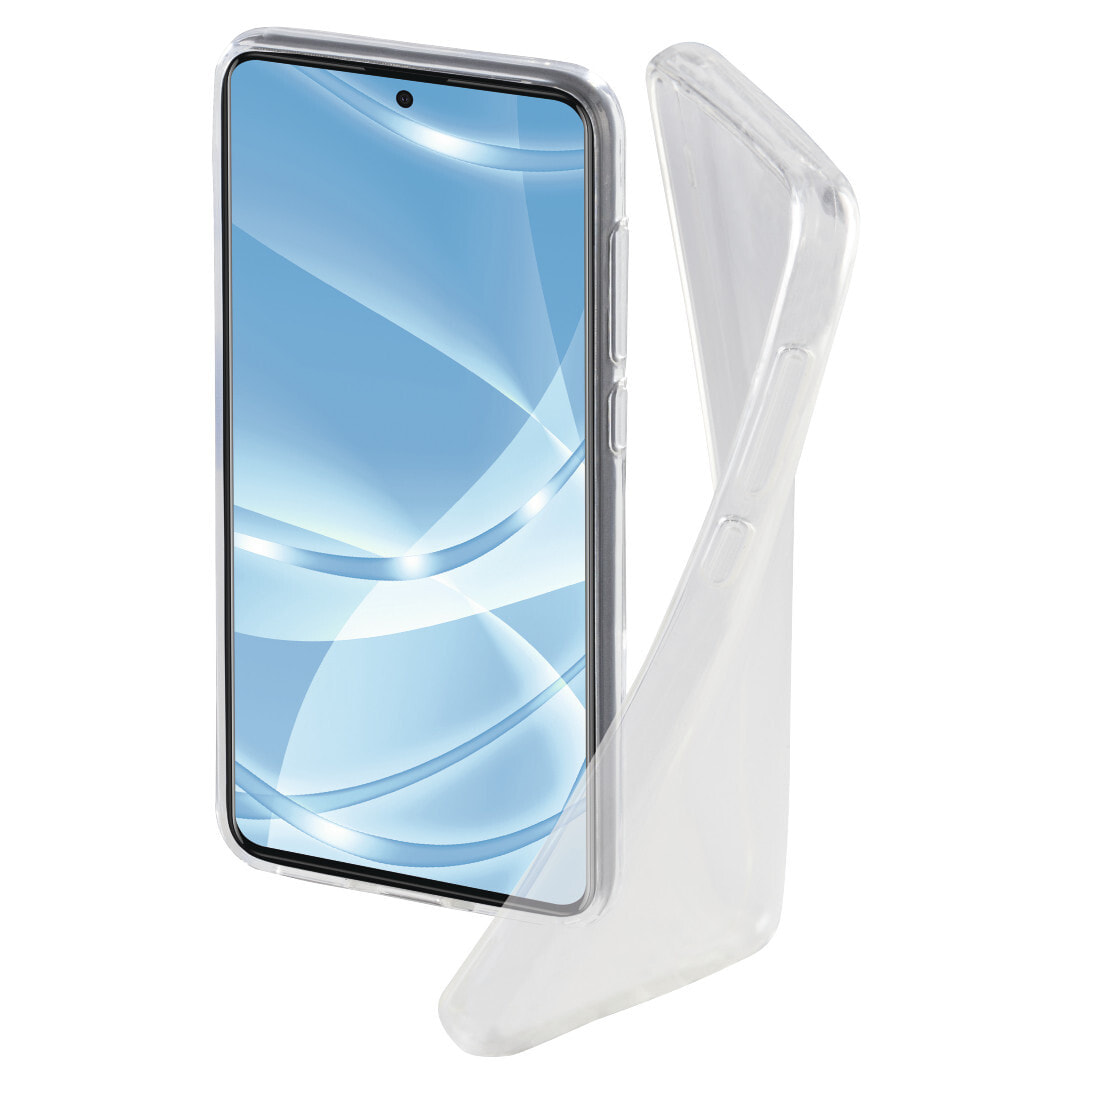 Hama Crystal Clear чехол для мобильного телефона 17 cm (6.7